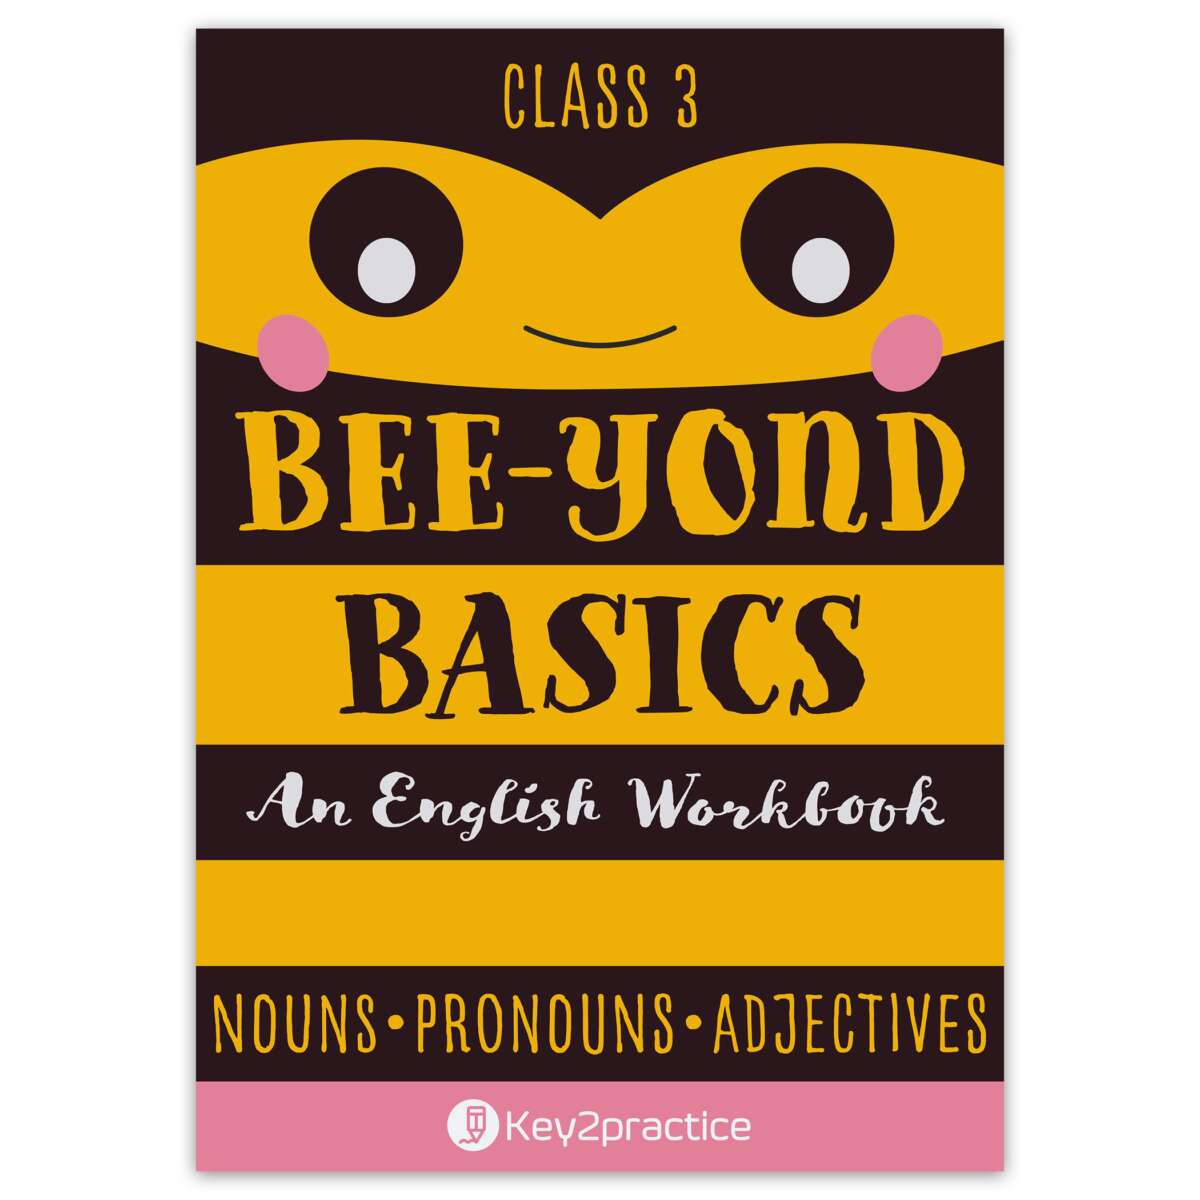 Class 1 English (Nouns Pronouns Adjectives) bee-yond basics